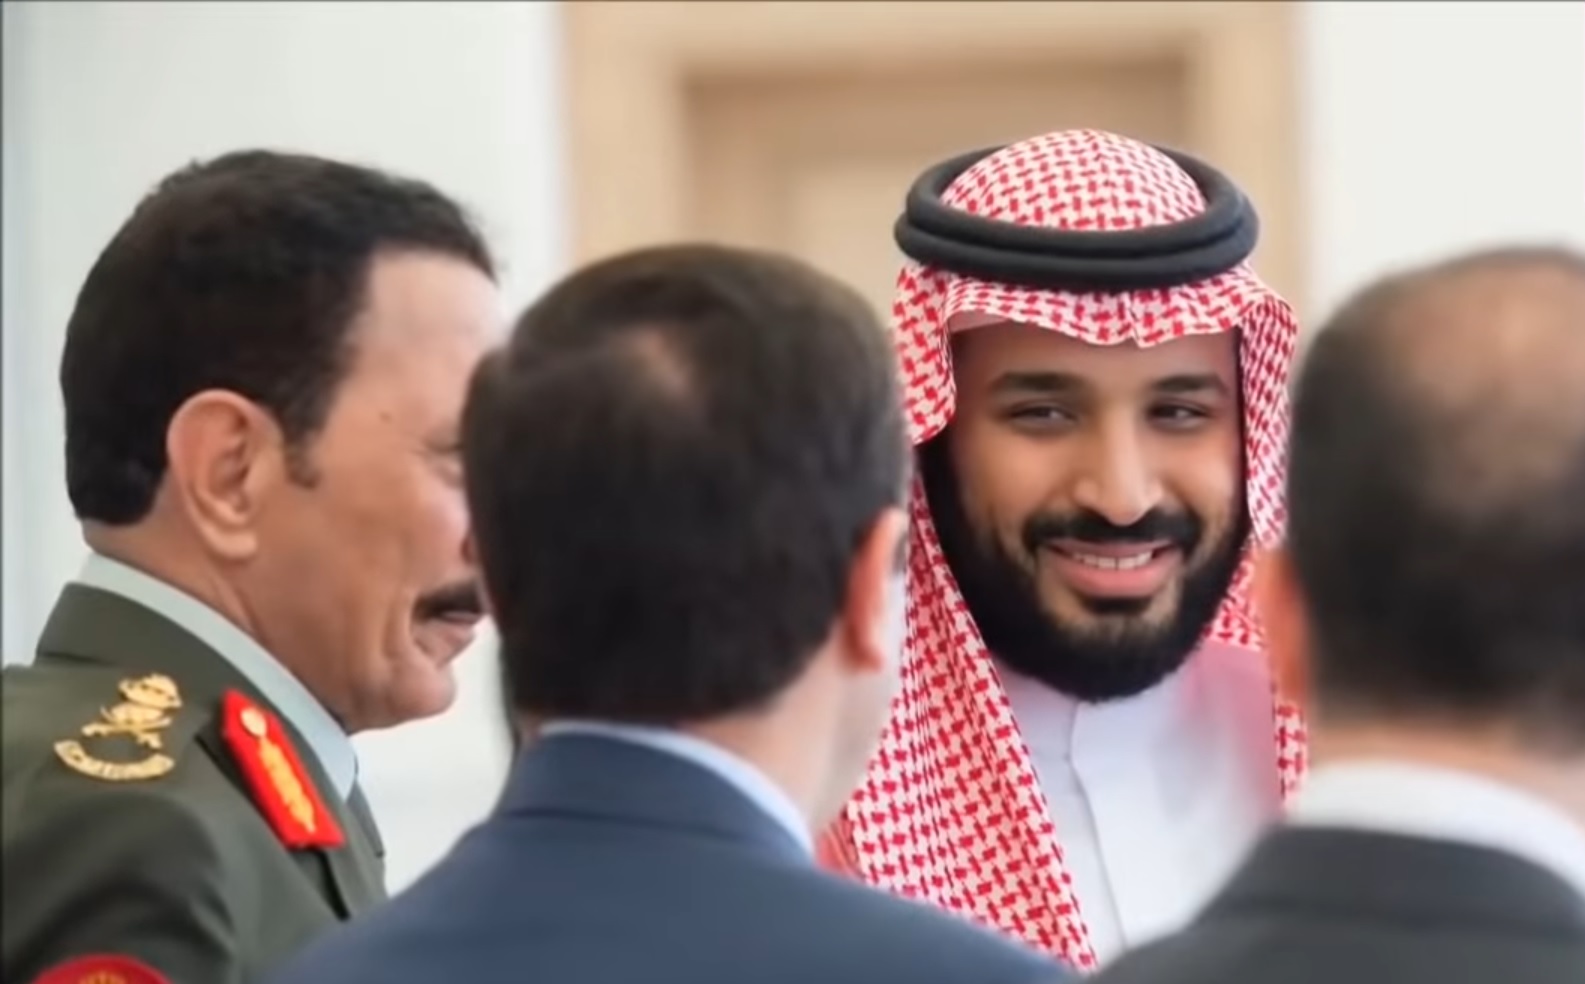 szejk arabii saudyjskiej